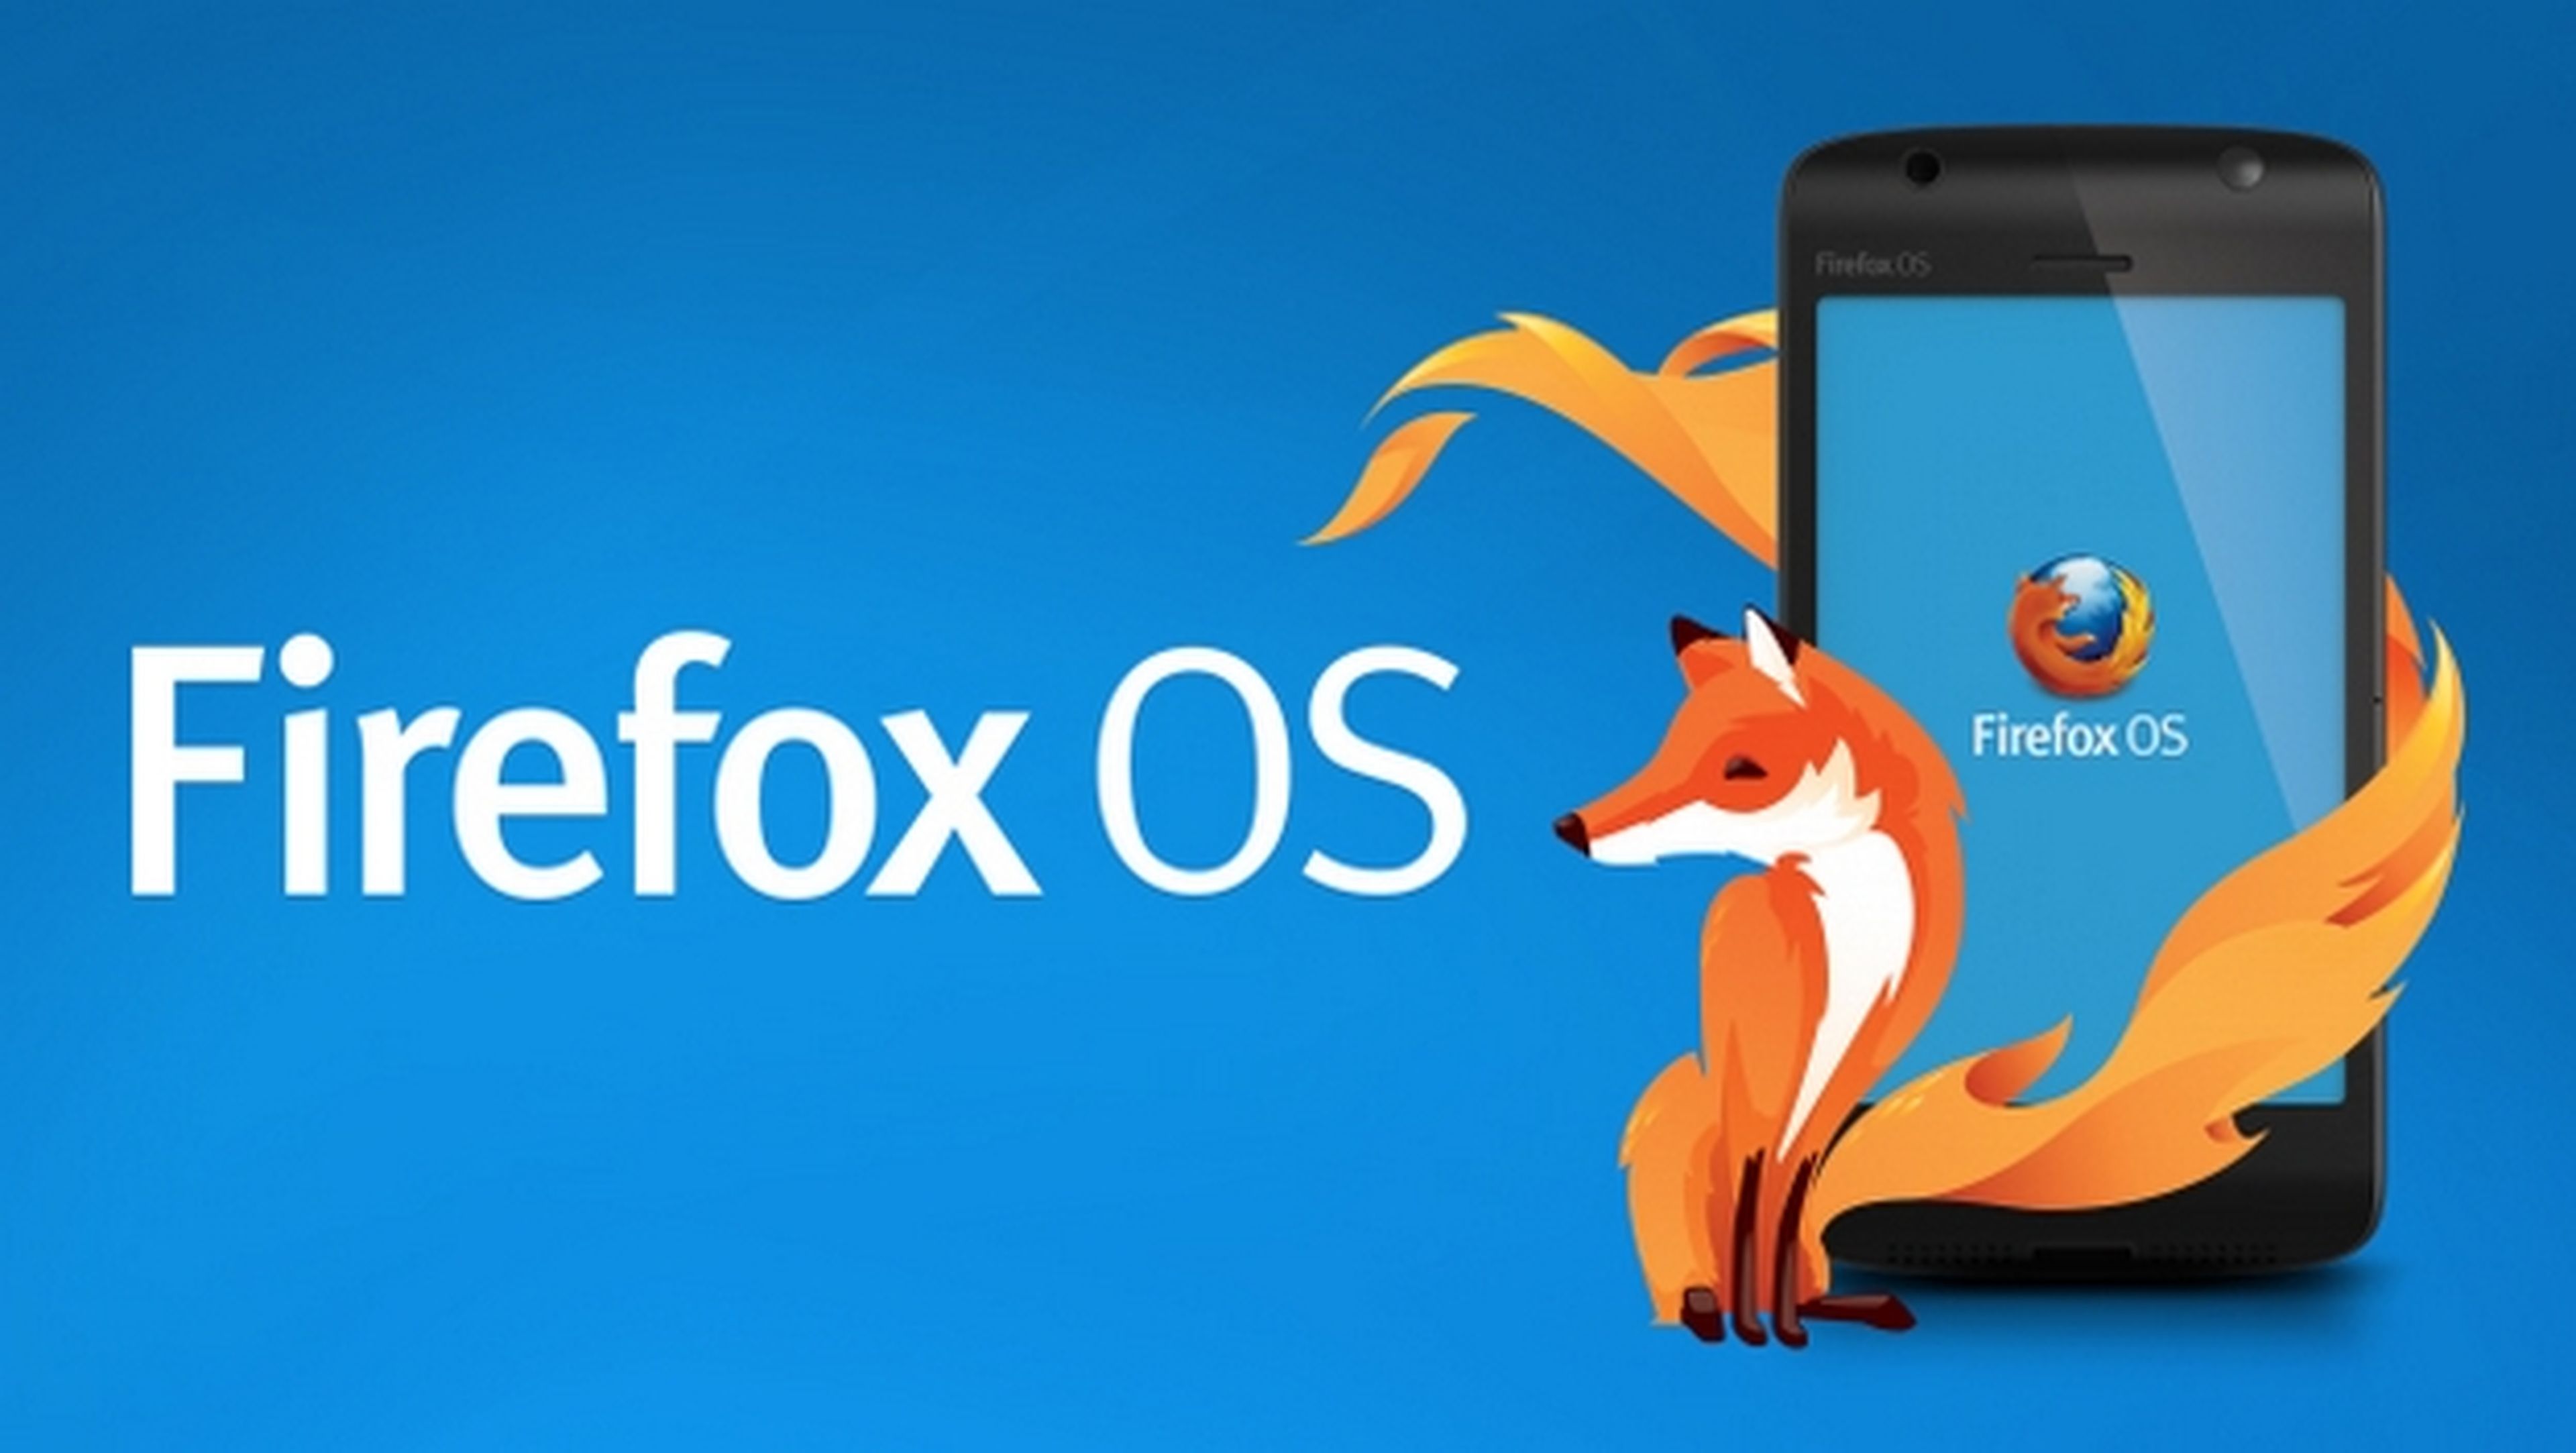 Firefox OS, el nuevo sistema operativo móvil, ya está disponible para instalar en el smartphone Nexus 5